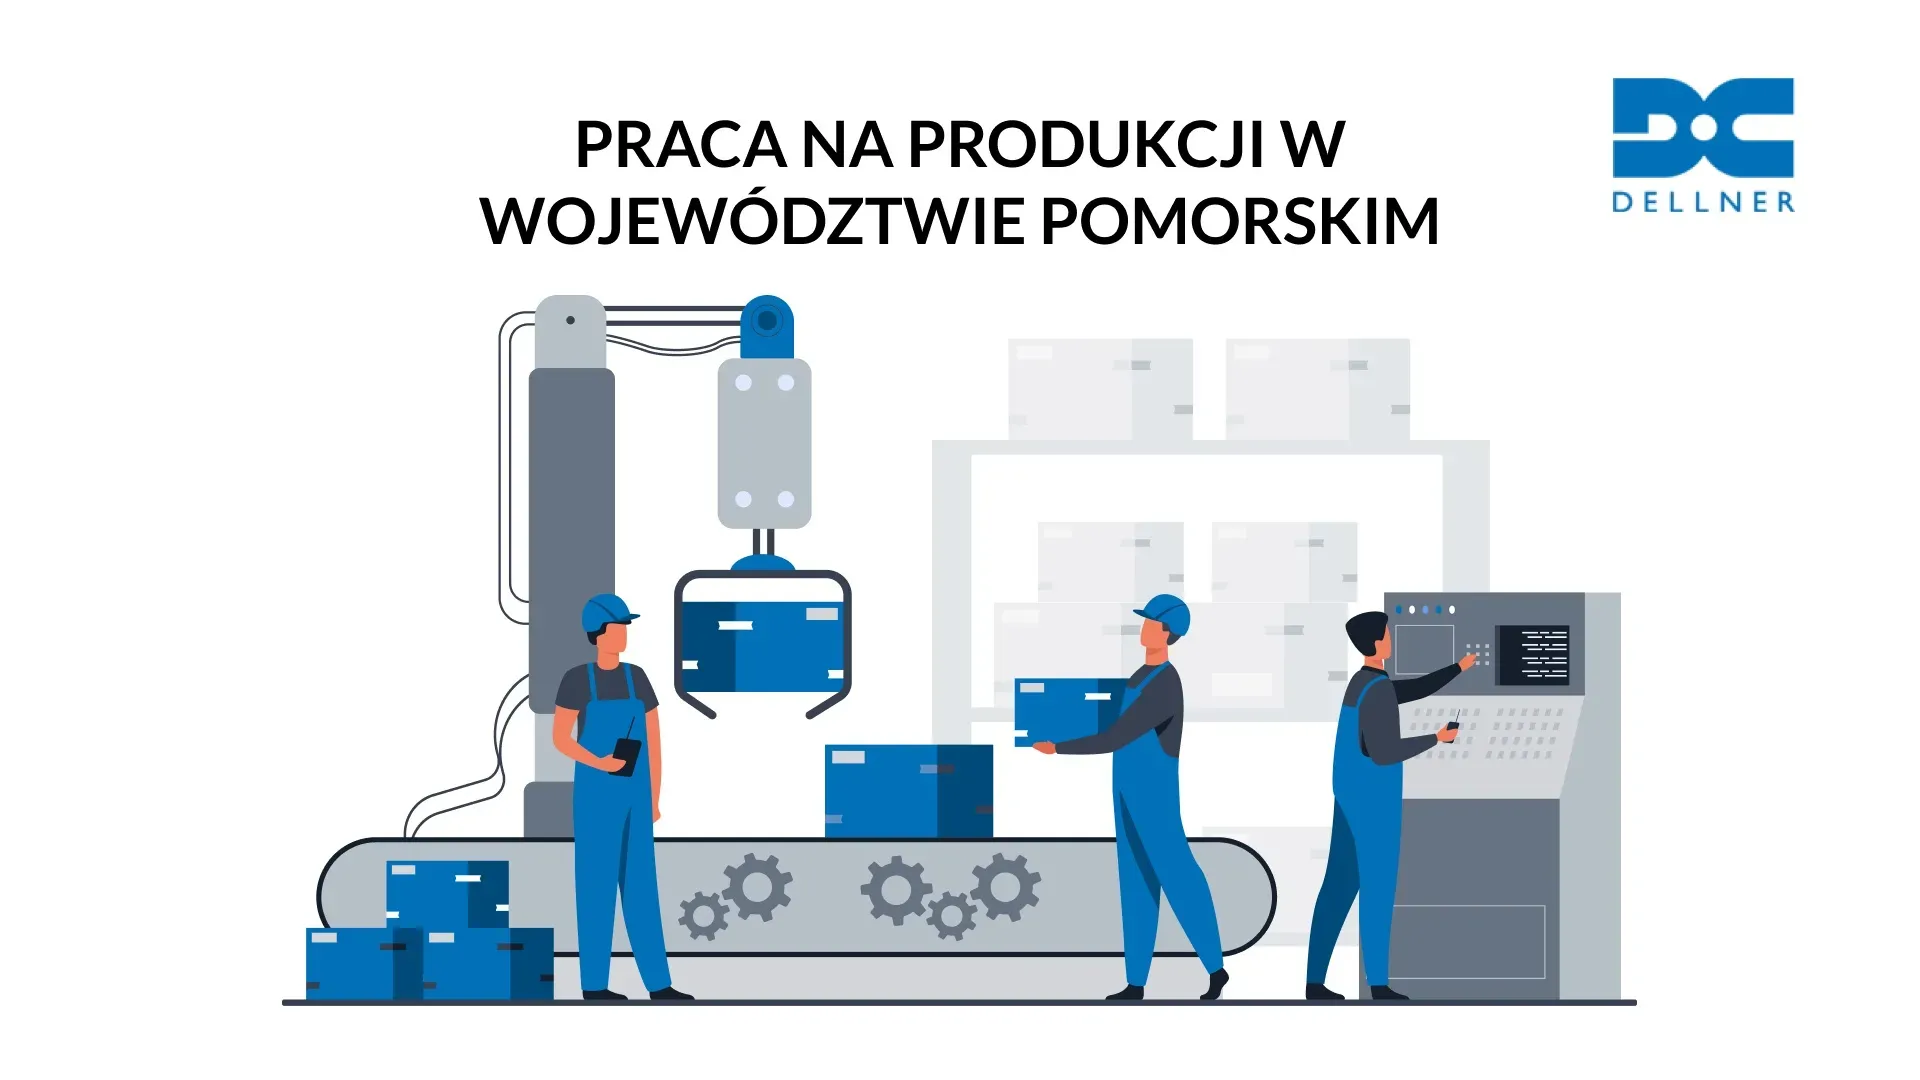 Praca na produkcji w województwie pomorskim